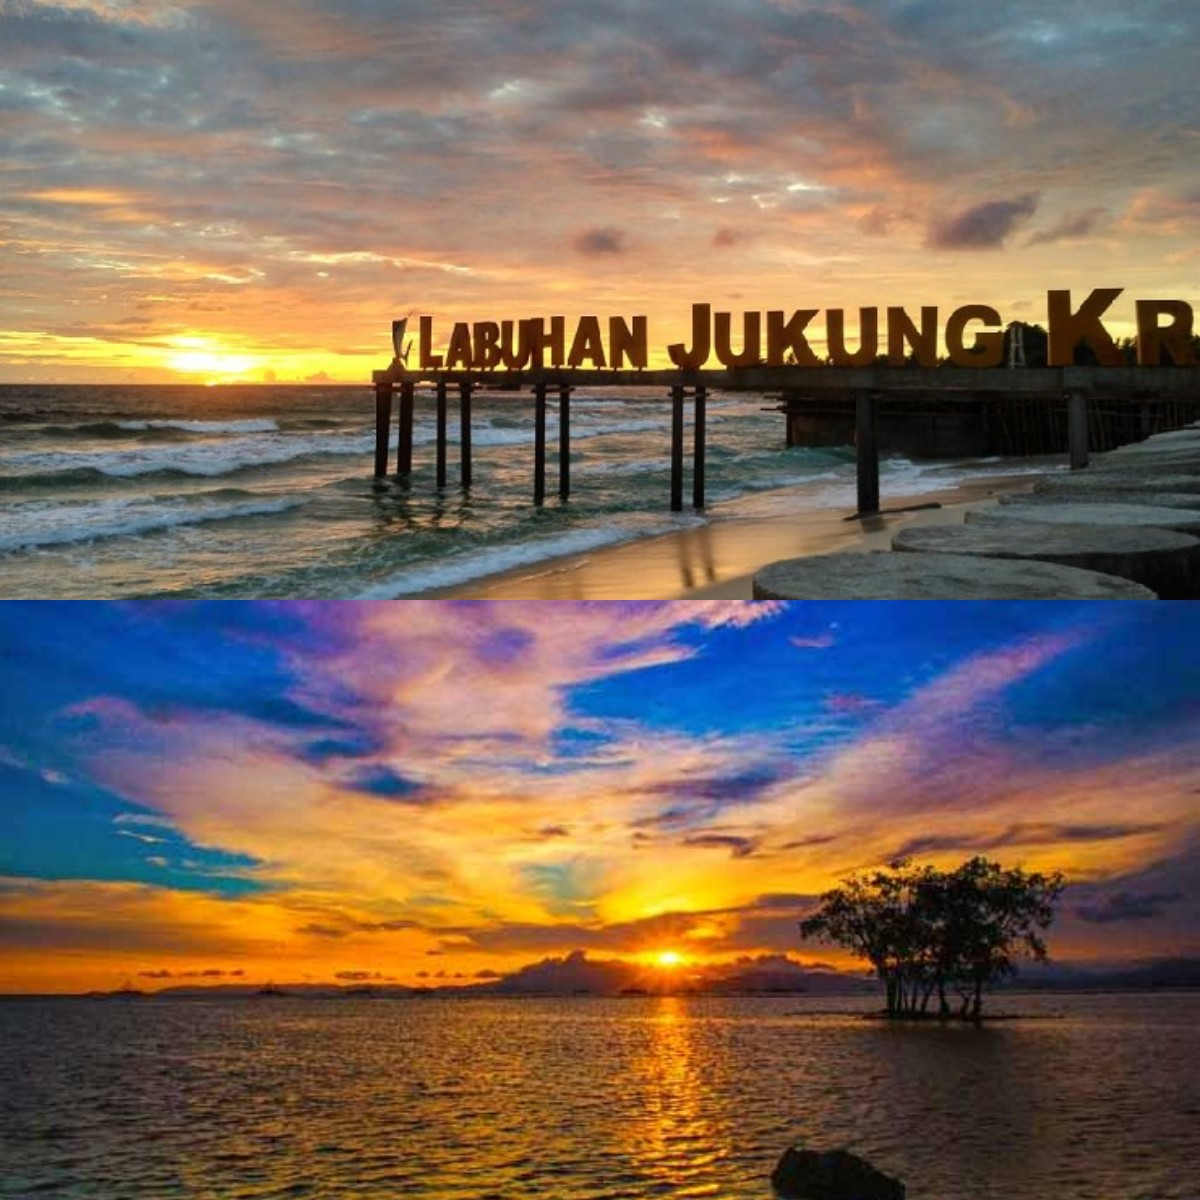 Berburu Sunset? Inilah 5 Rekomendasi Wisata di Bandar Lampung dengan Pemandangan Sunset yang Indah 